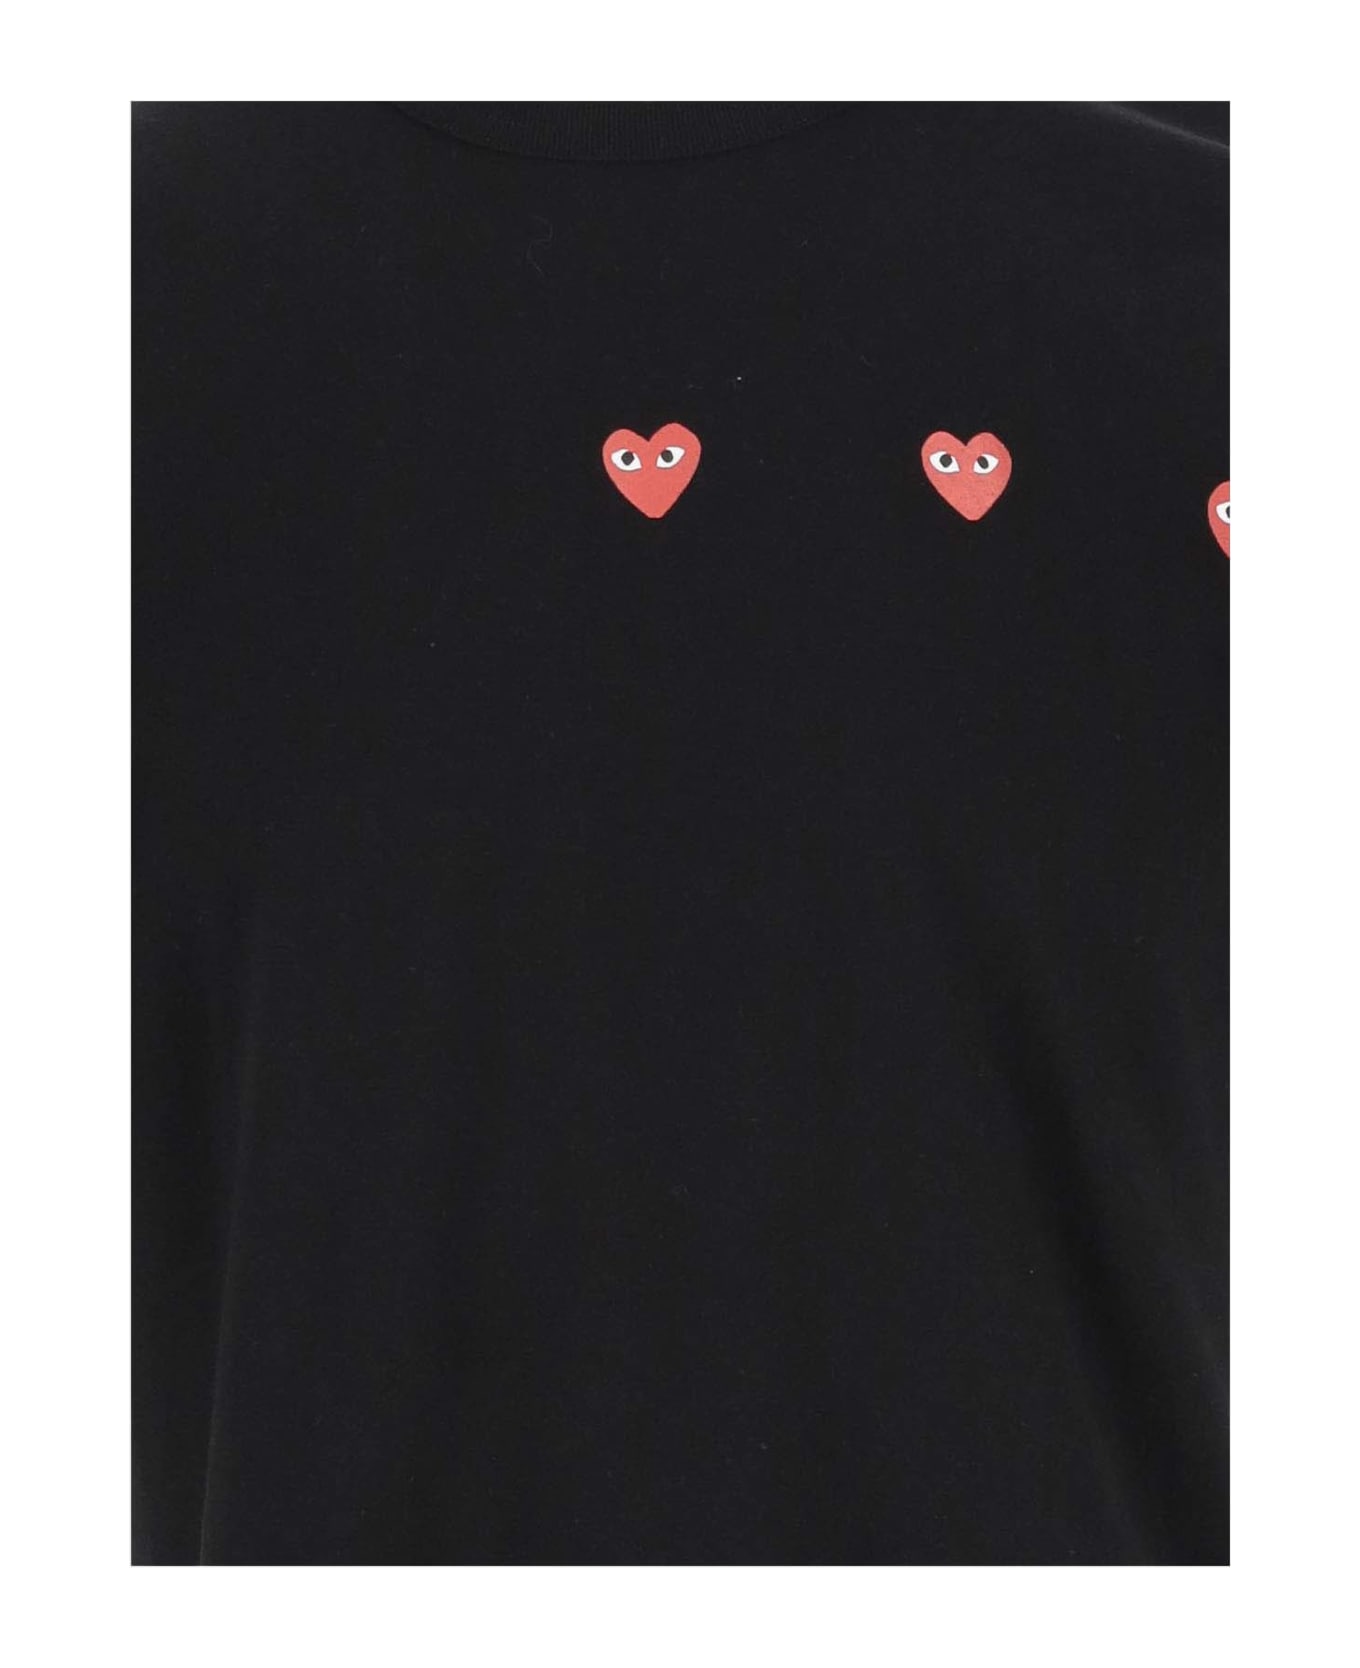 Comme des Garçons Cotton T-shirt With Logo - Black シャツ